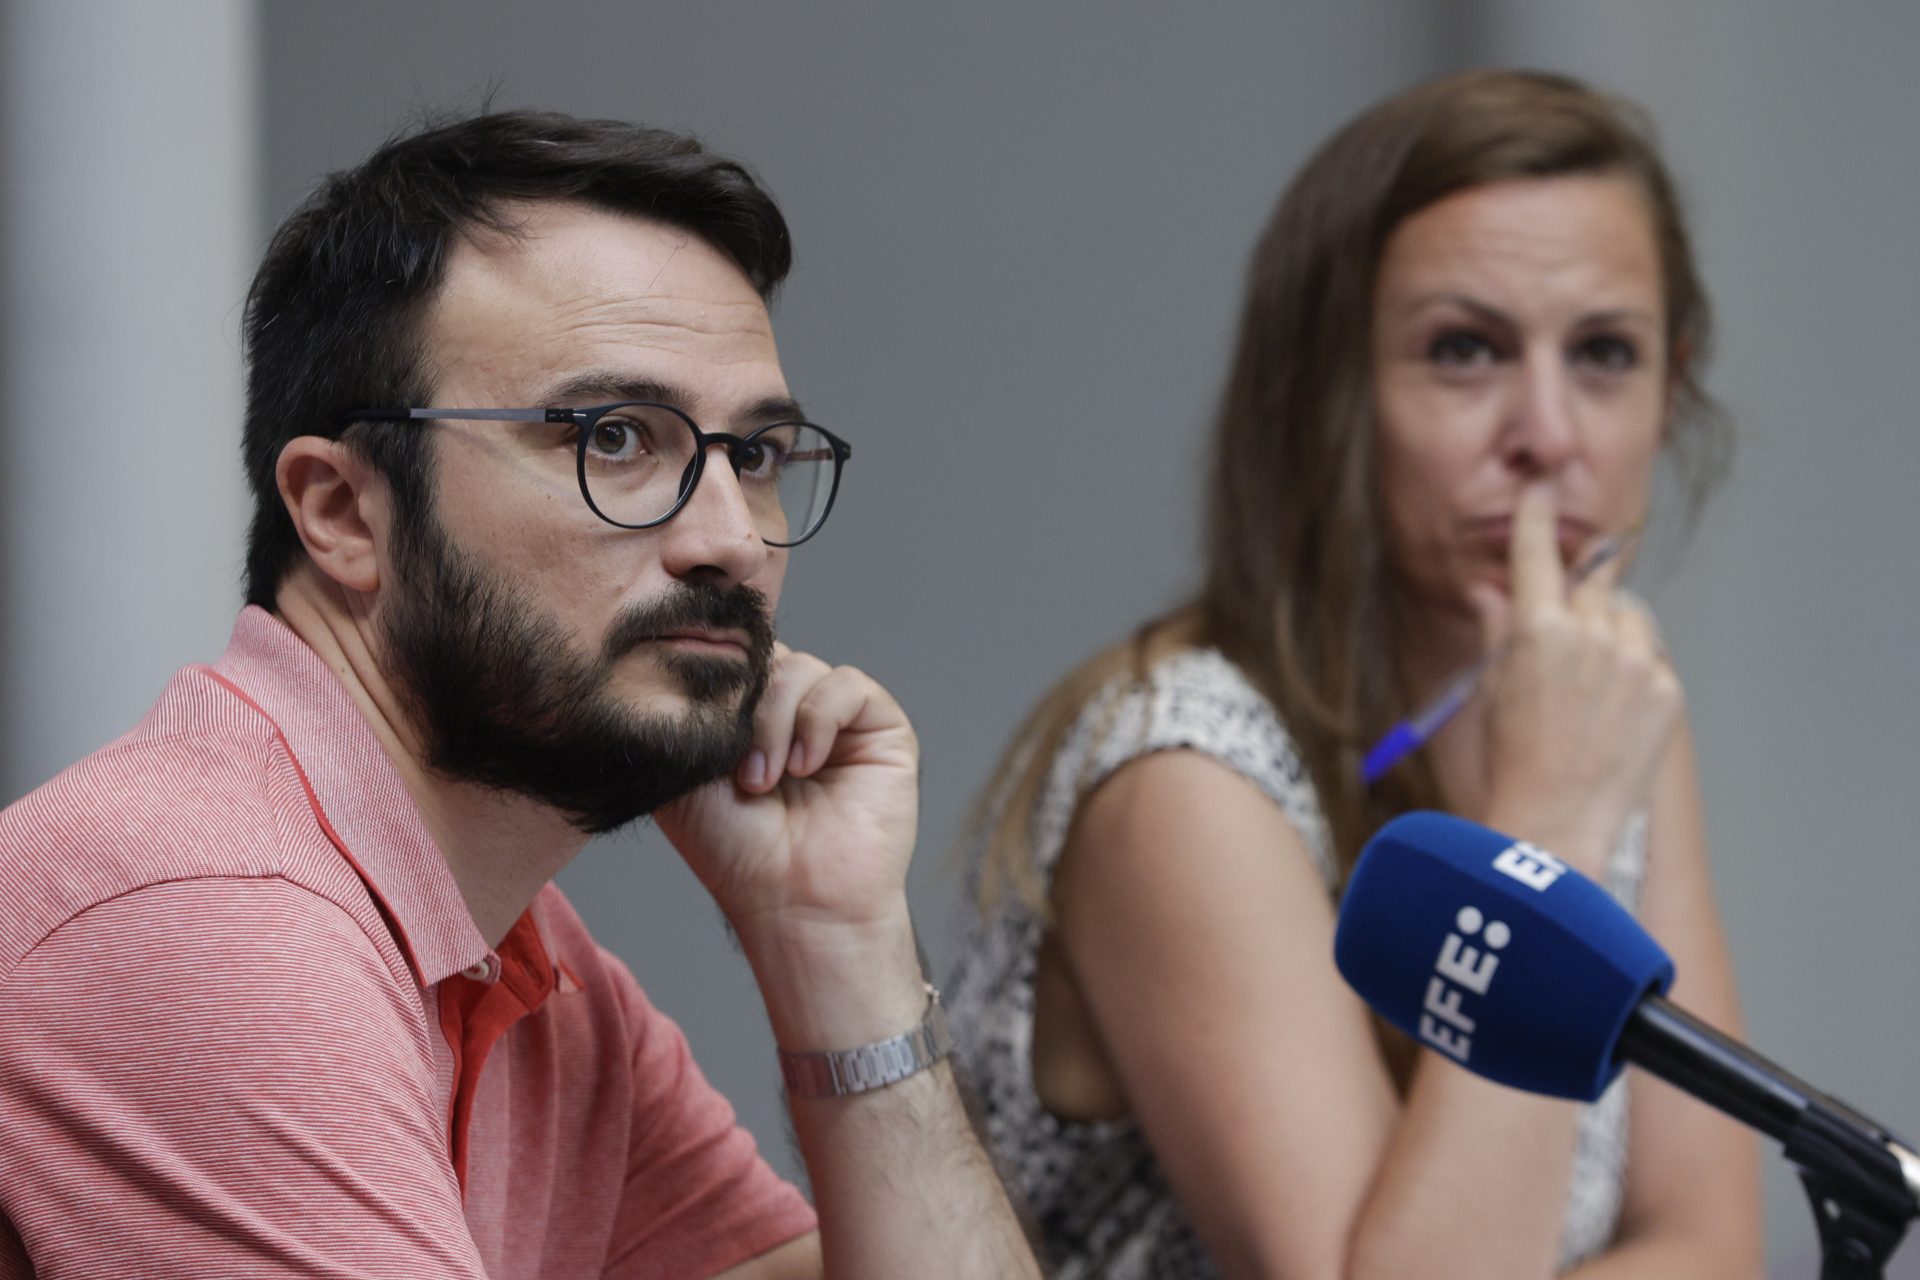 La CUP reprocha a ERC que “rebaje” sus condiciones a Sánchez aparcando la autdeterminación